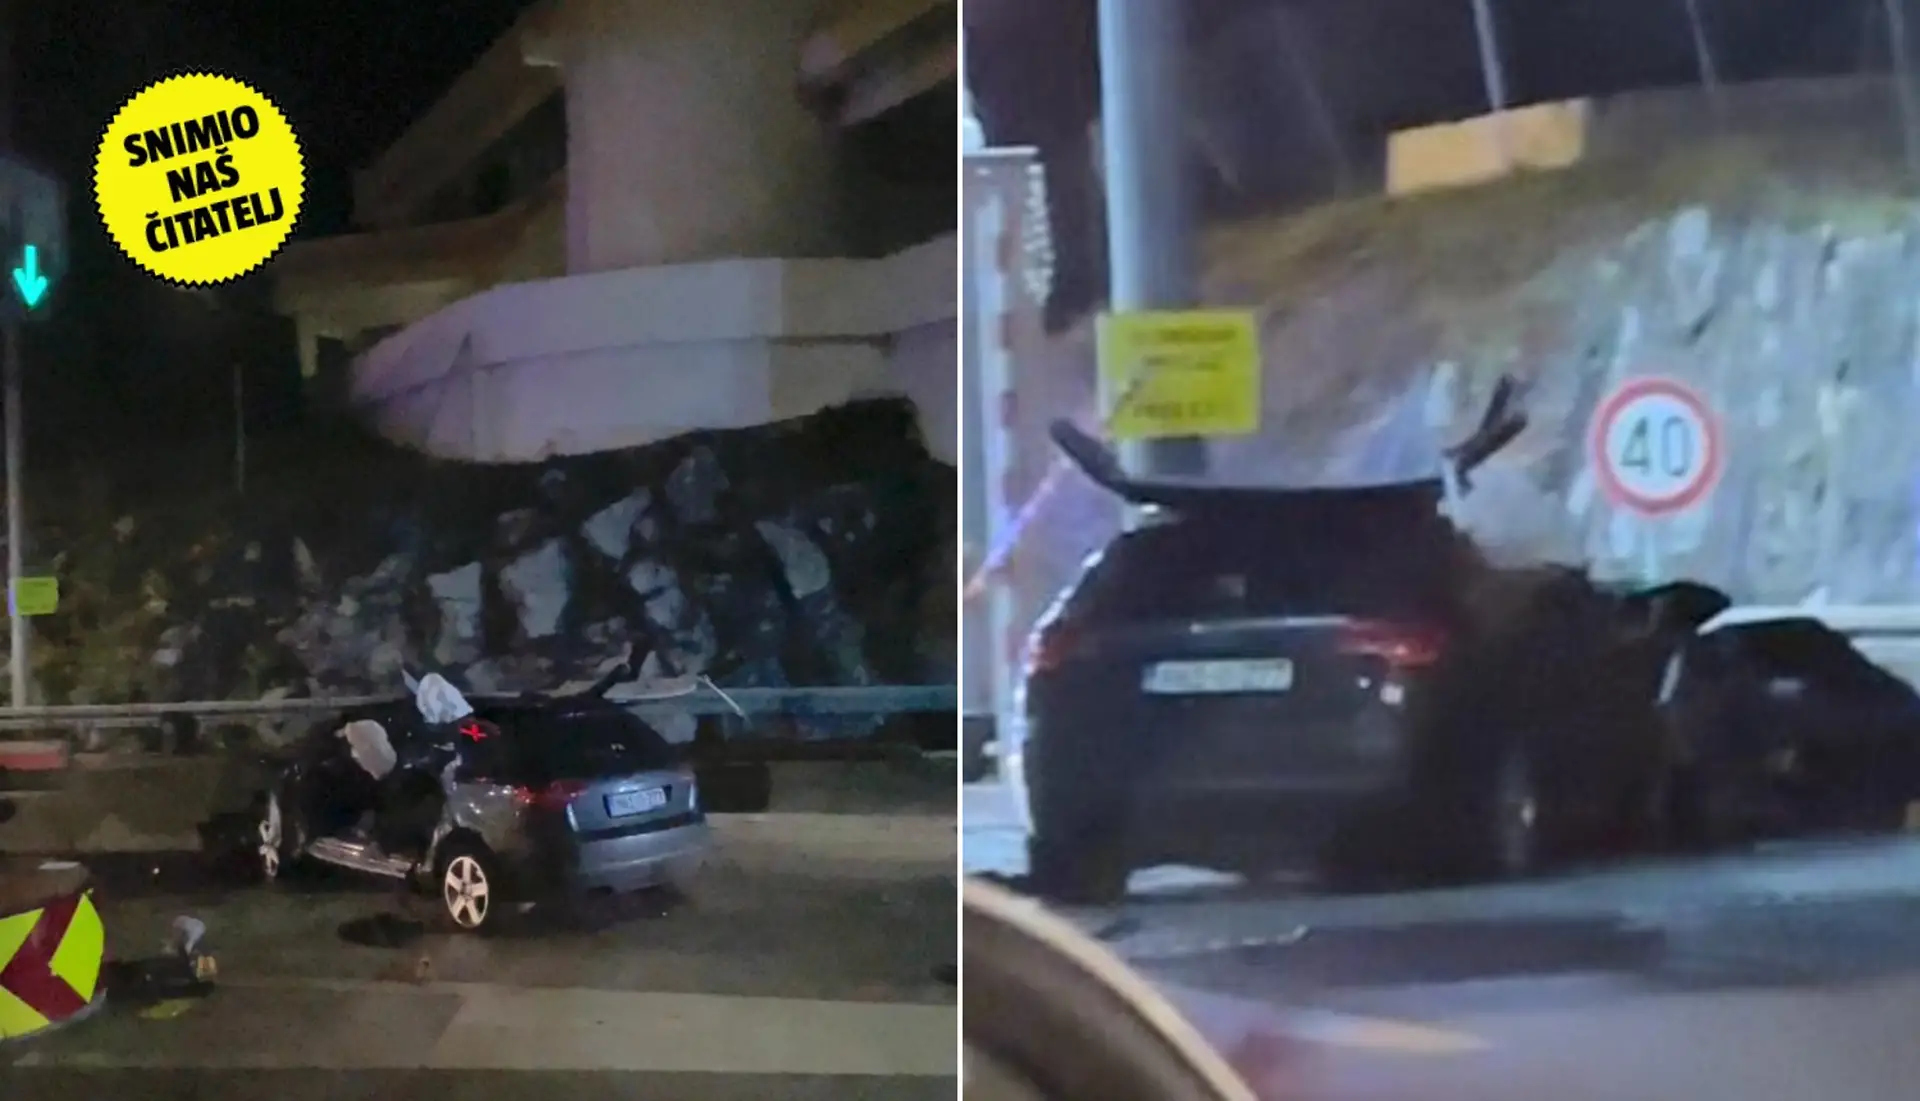 Nesreća u tunelu Učka: Dvije osobe poginule u automobilu bh registracijskih oznaka